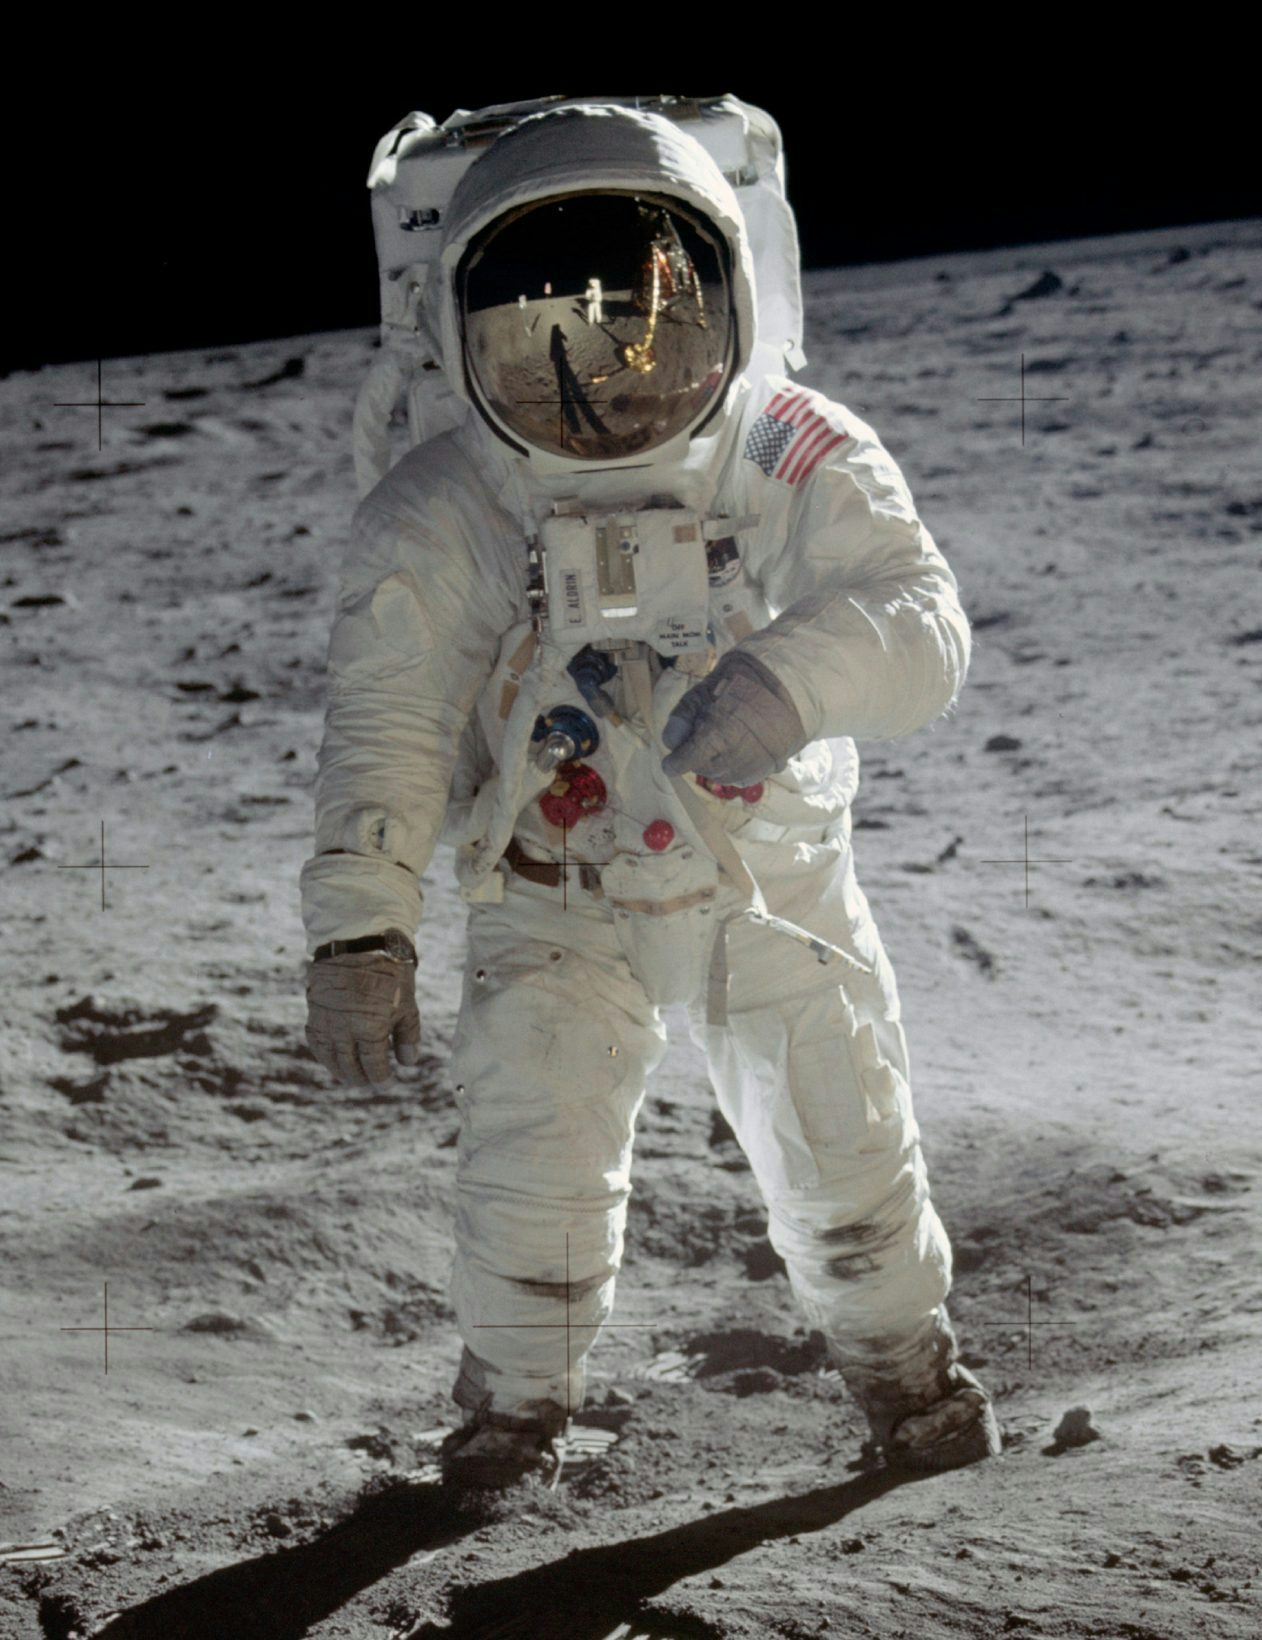 Ce 21 juillet, Buzz Aldrin célèbre l’alunissage aux côtés d’Omega